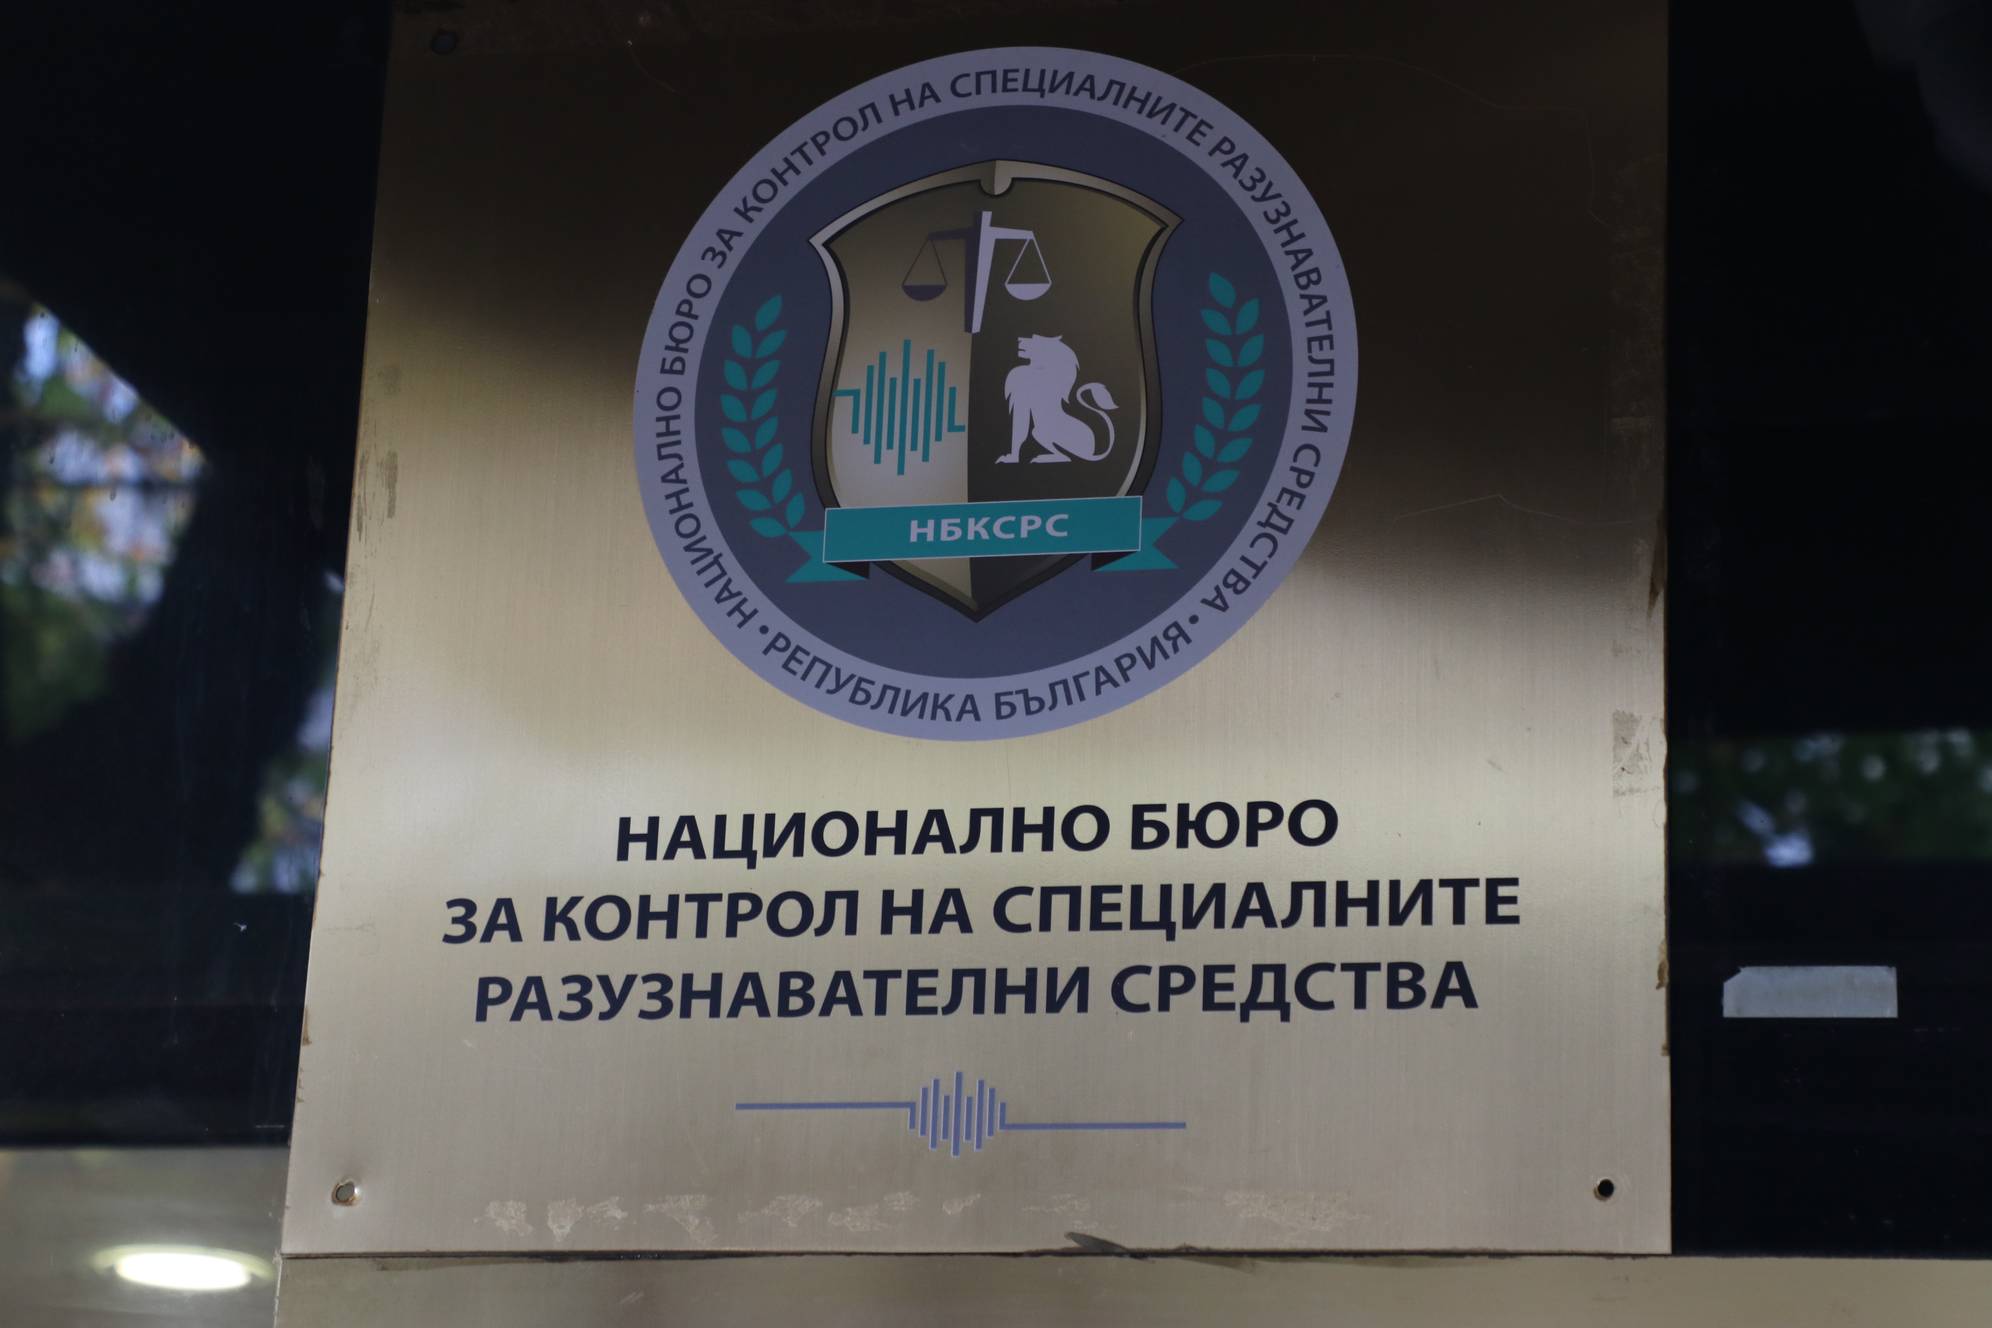 Национална бюро за контрол на специалните разузнавателни средства (СРС)